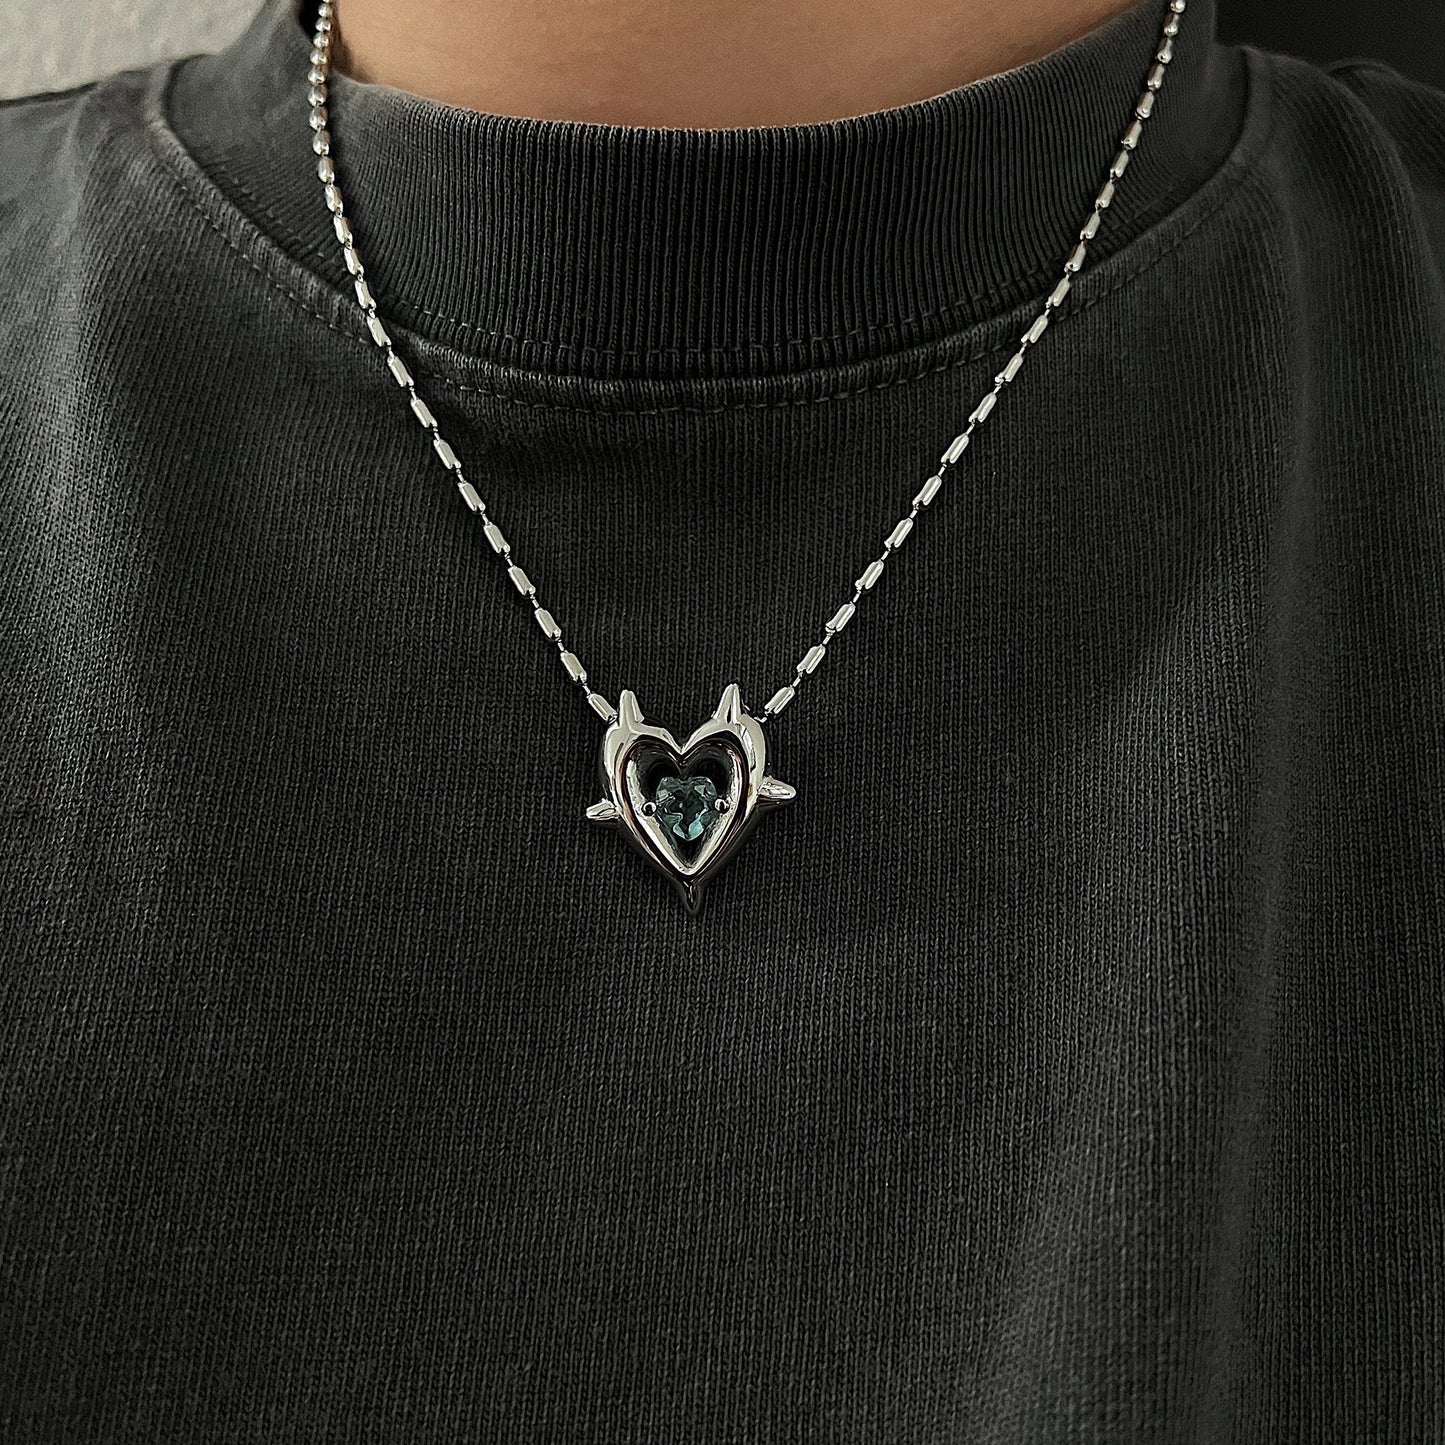 Heart Pendant Necklaces